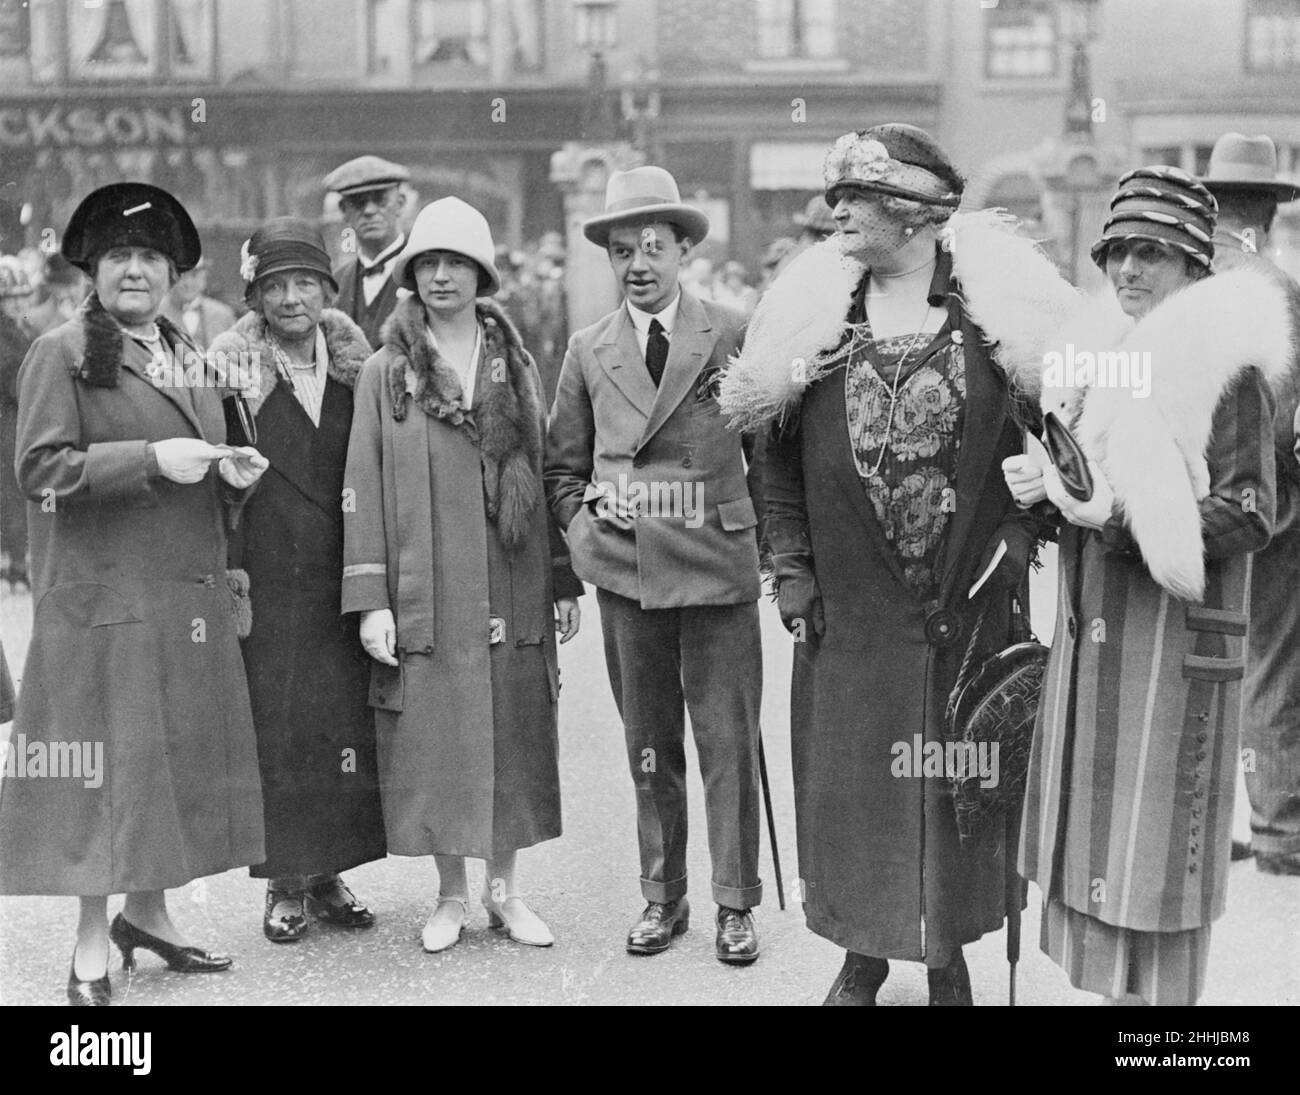 Alla conferenza sindacale di Scarborough del 1925 sono raffigurati: la sig.ra Clynes, la sig.ra parker, la sig.ra parker, il sig. Lamb, Frances Daisy Greville la contessa di Warwick e la sig.ra Bramley.settembre 1925. Foto Stock